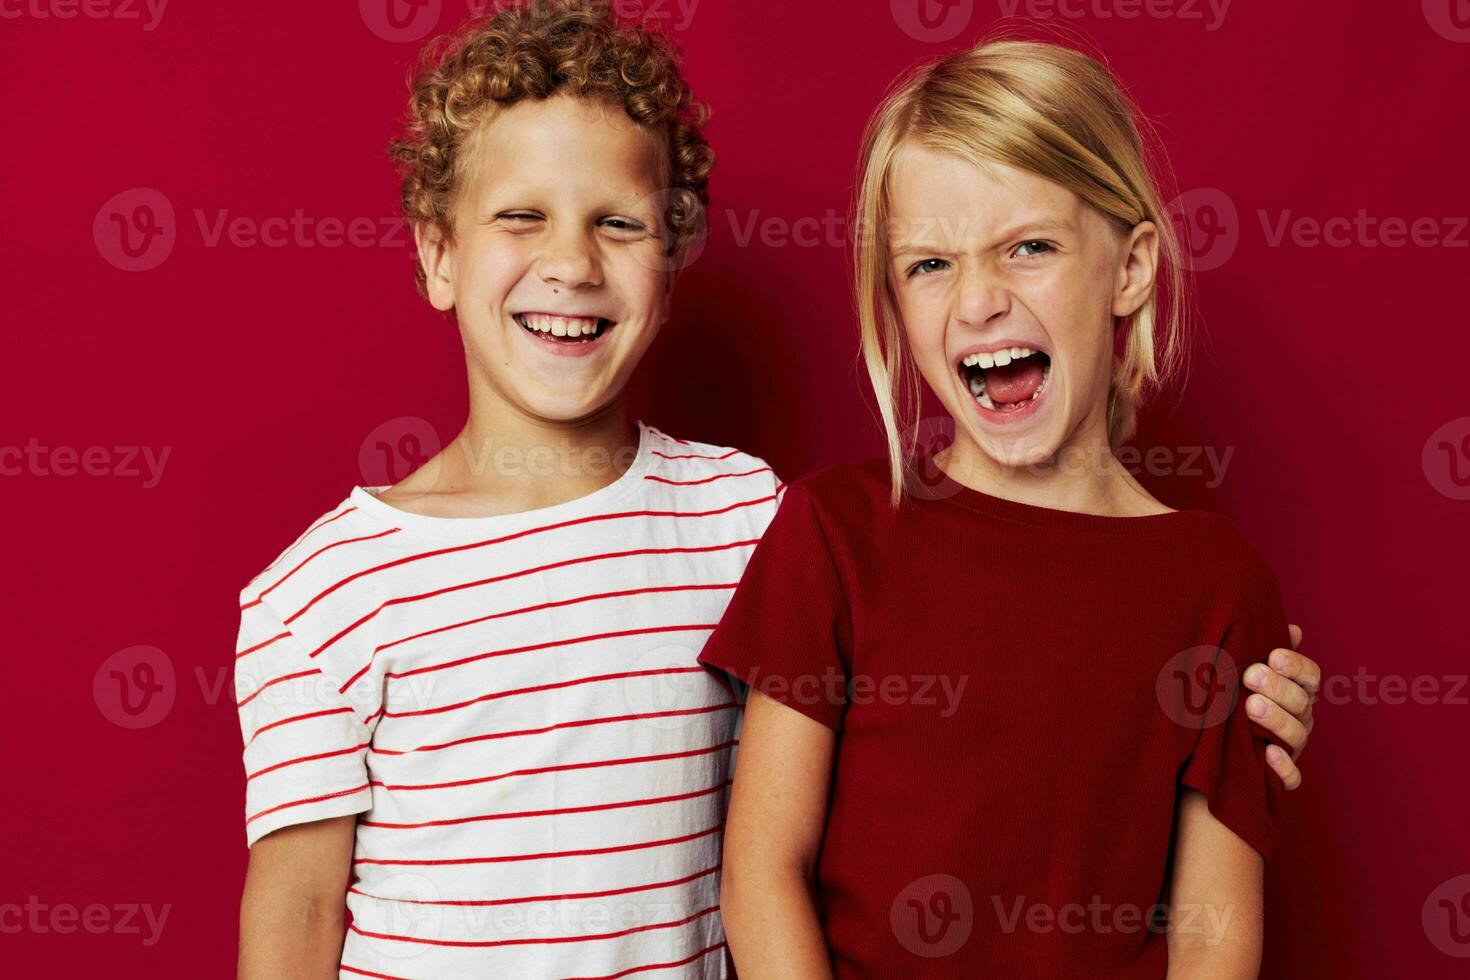 süß Vorschule Kinder Emotionen Stand Seite durch Seite im täglich Kleider rot Hintergrund foto